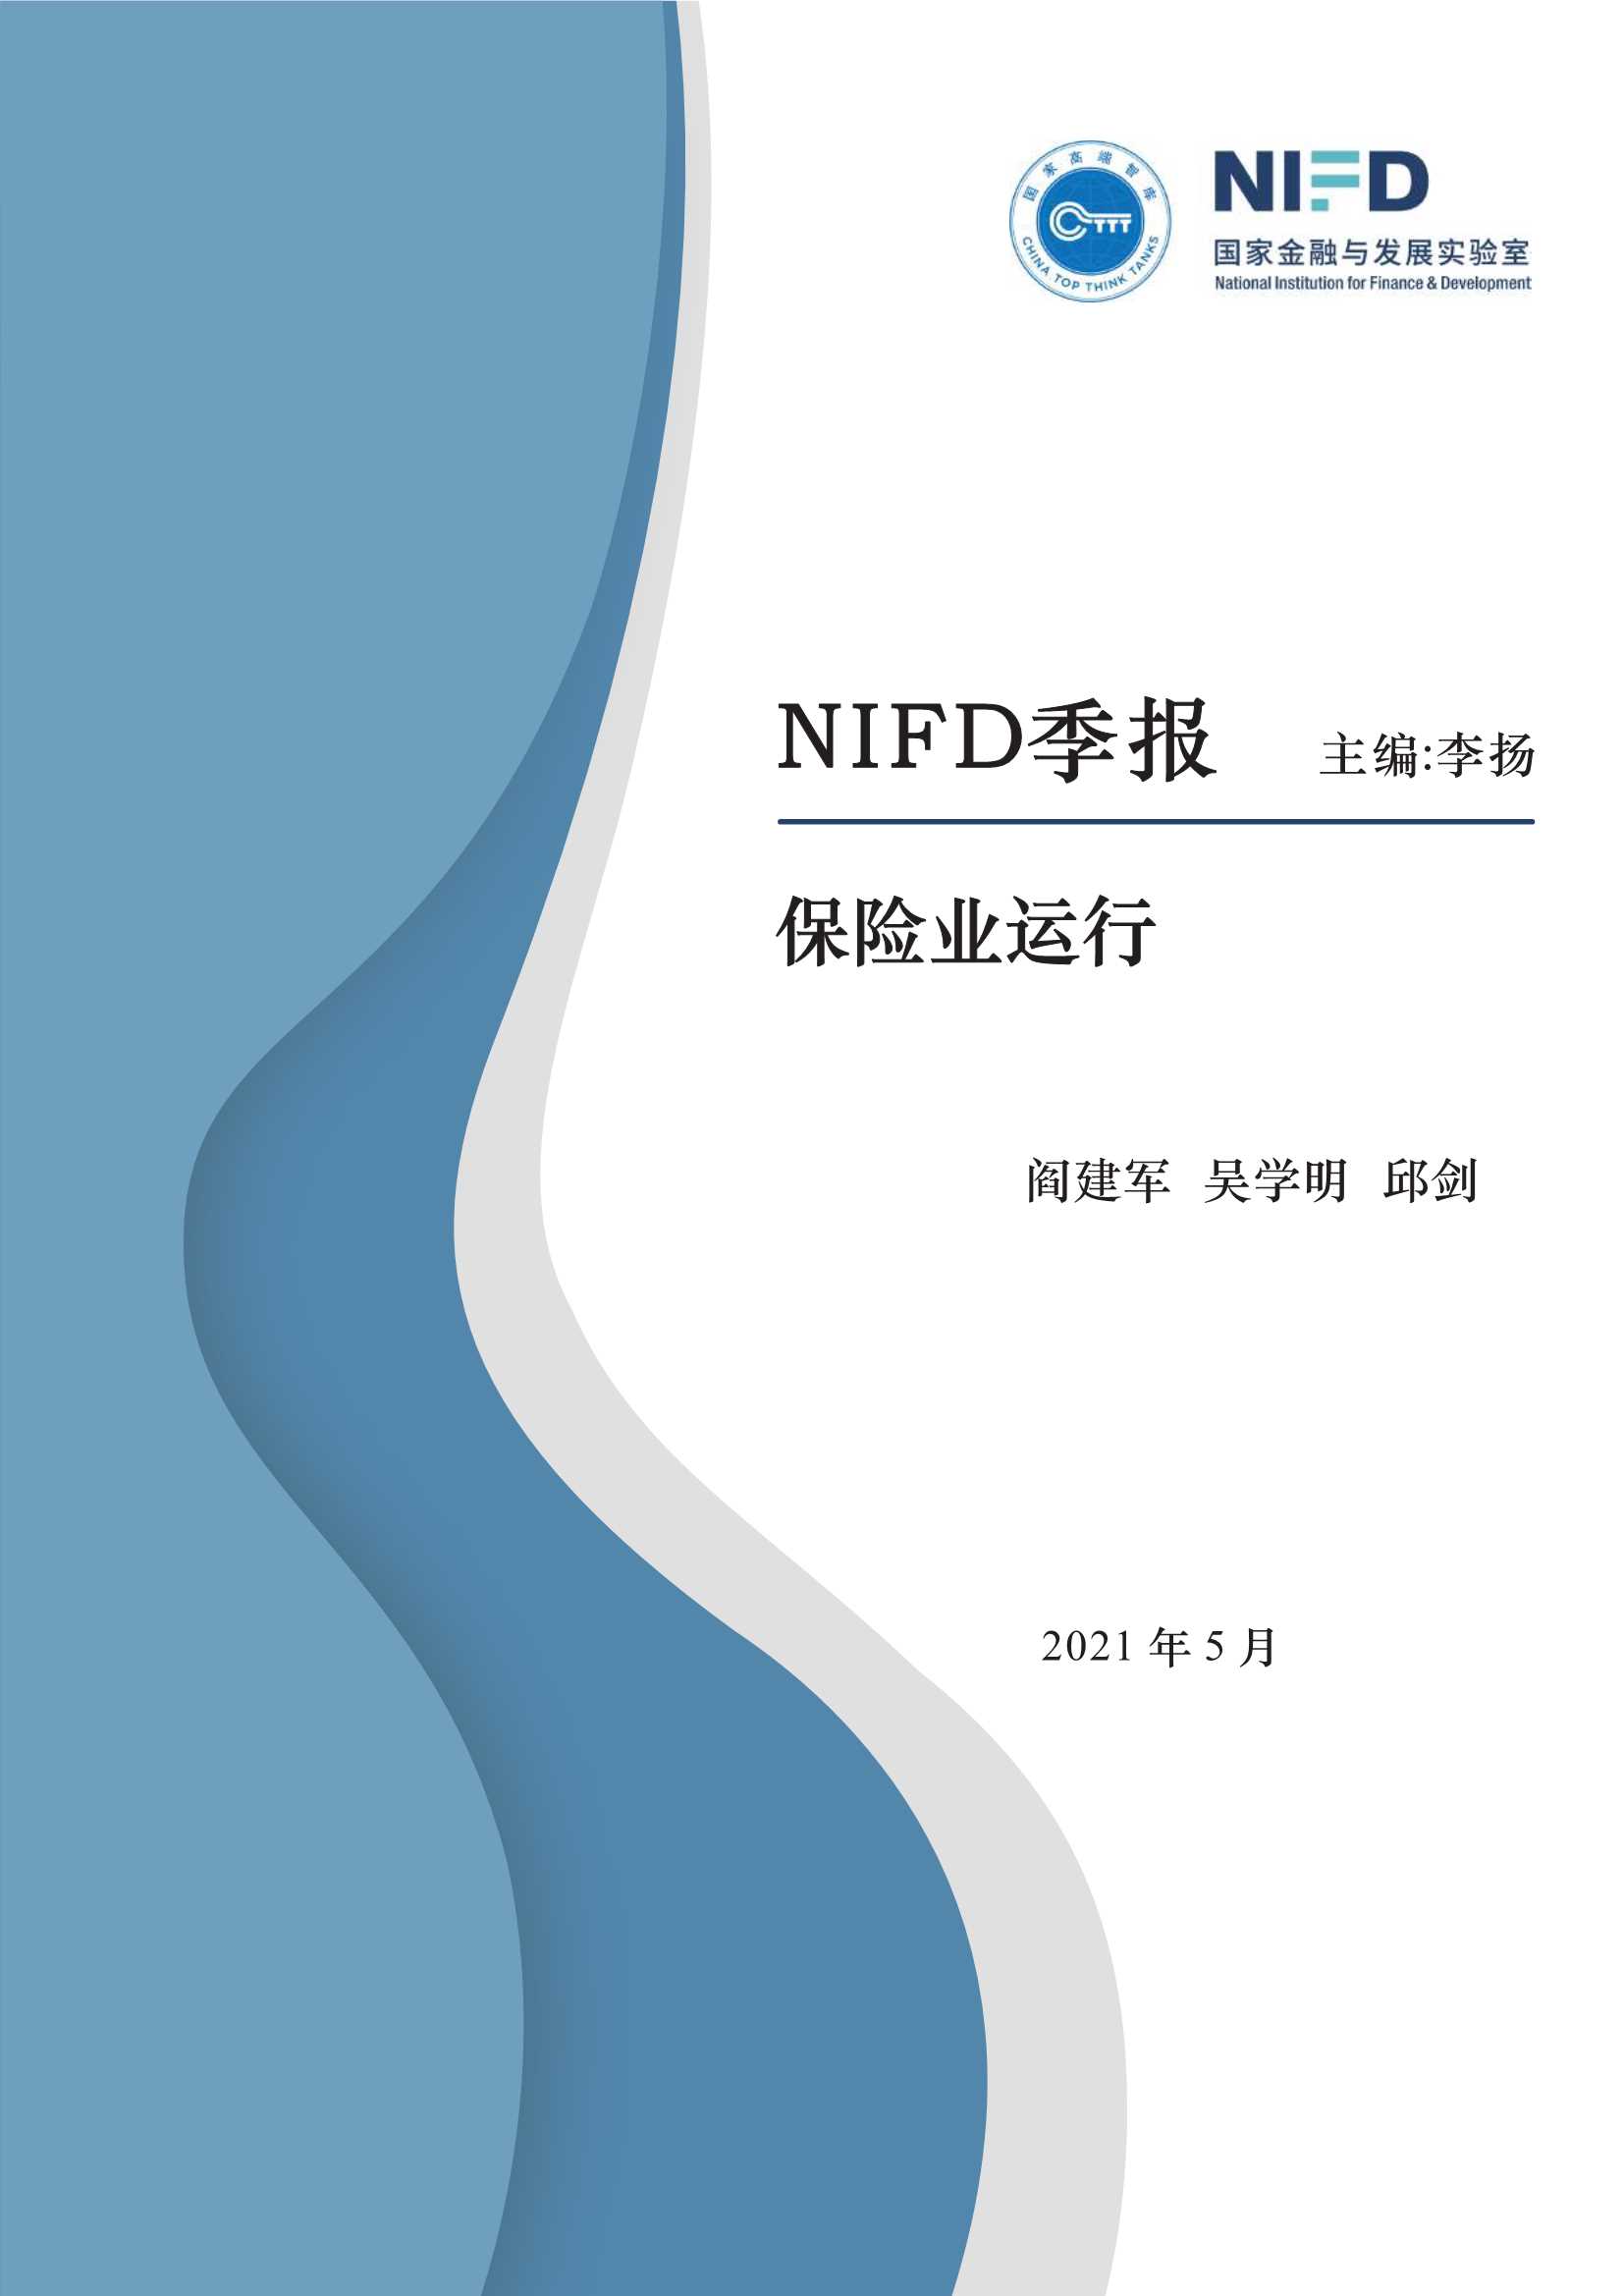 NIFD-2021Q1保险业运行-2021.05-11页